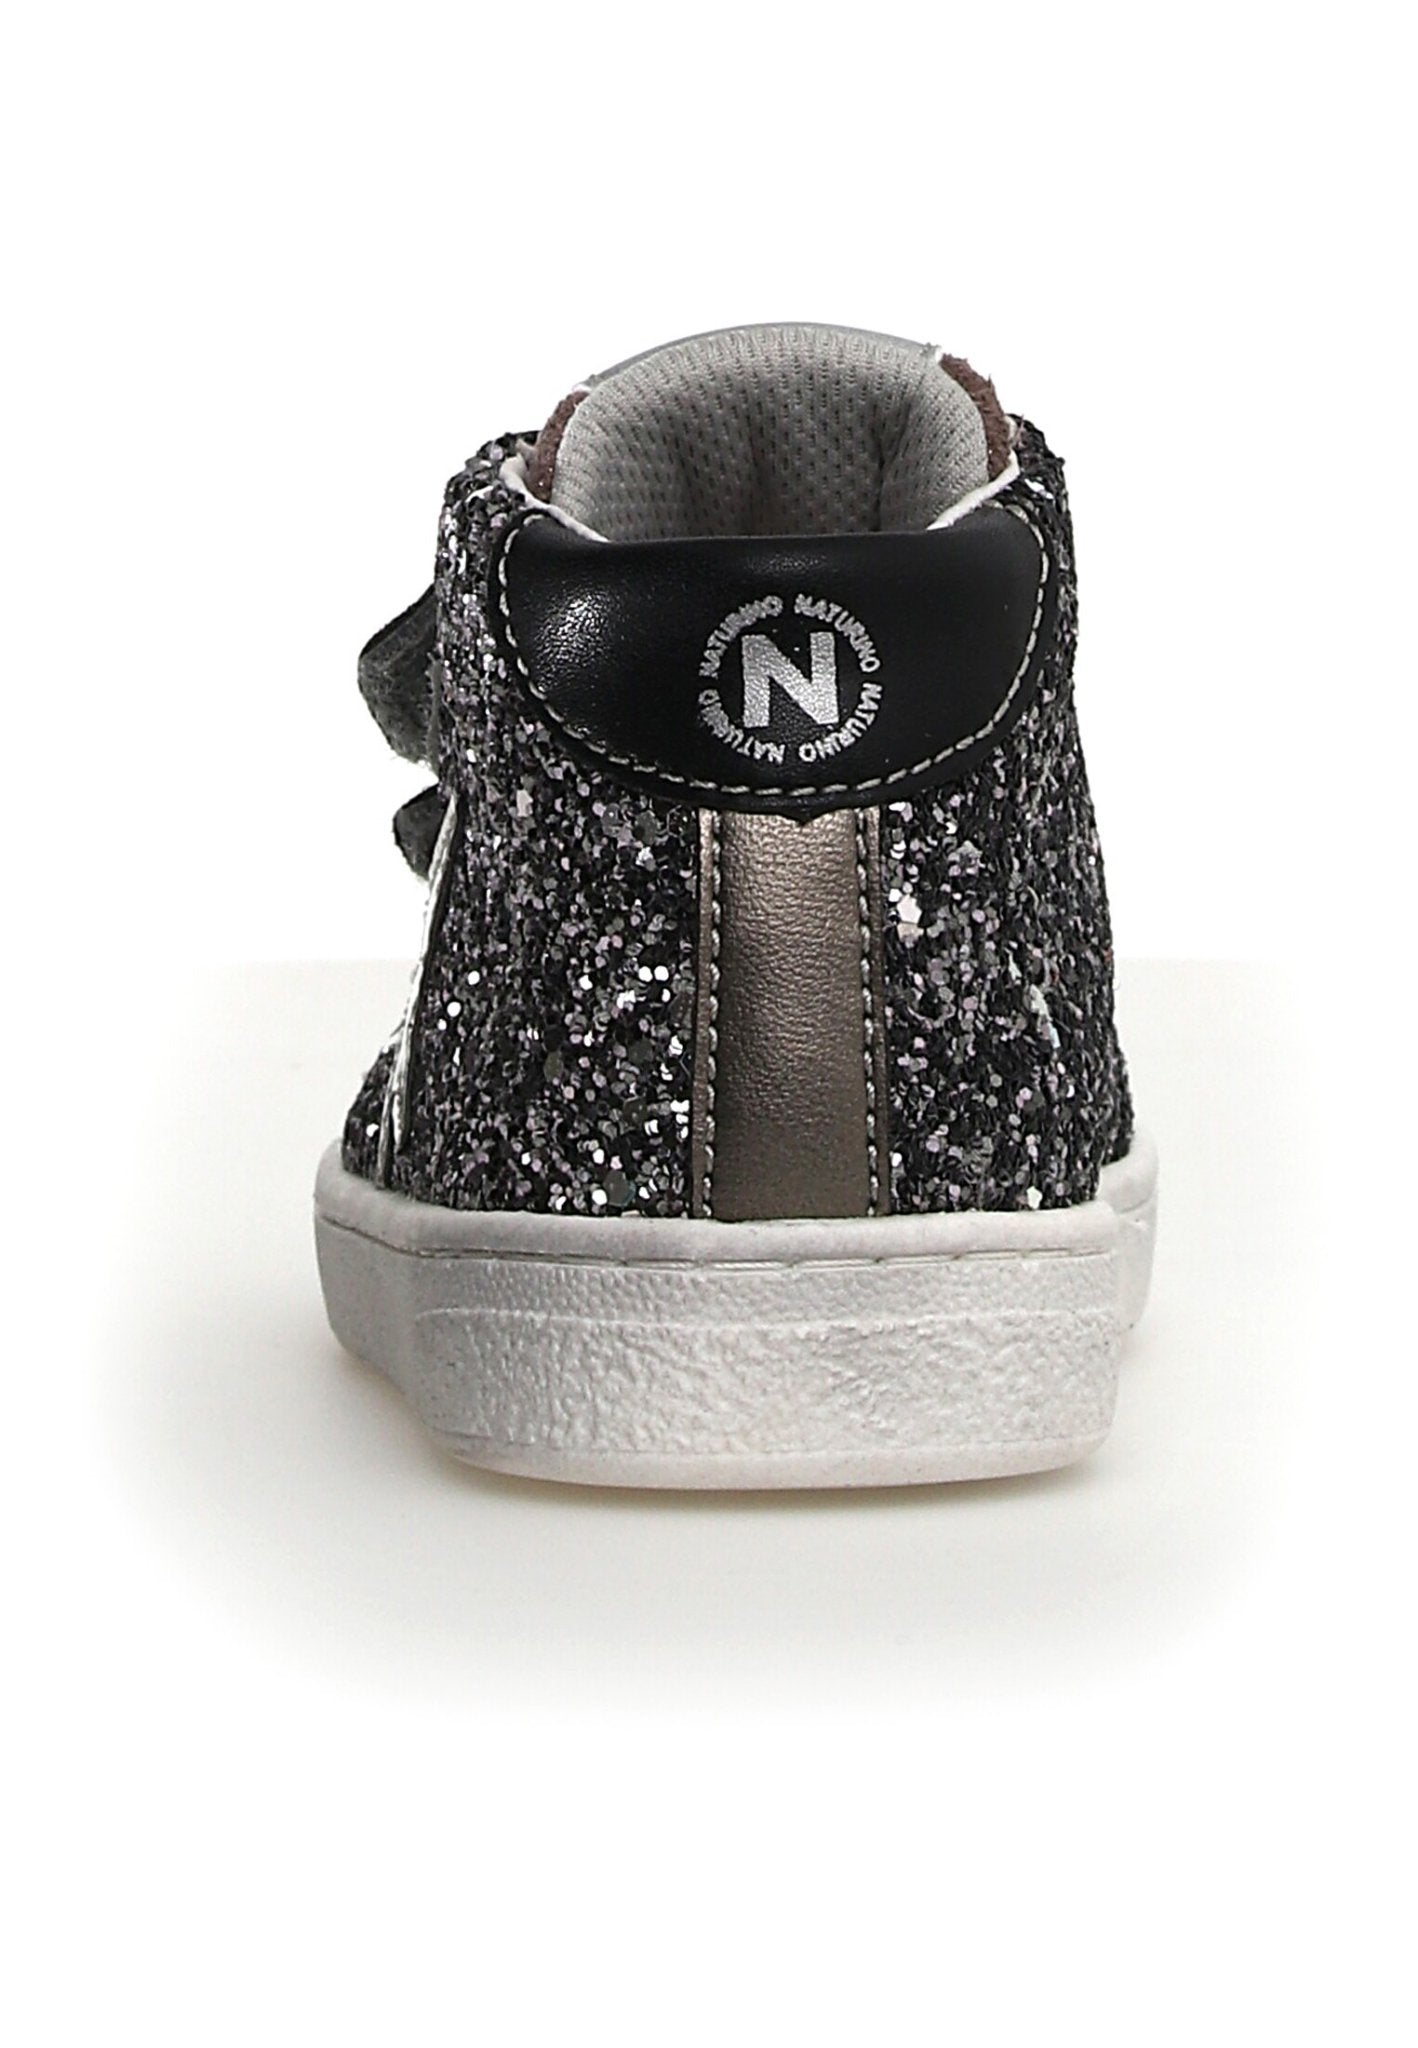 NATURINO PINN HIGH Noir glitter chaussures Basses Baskets